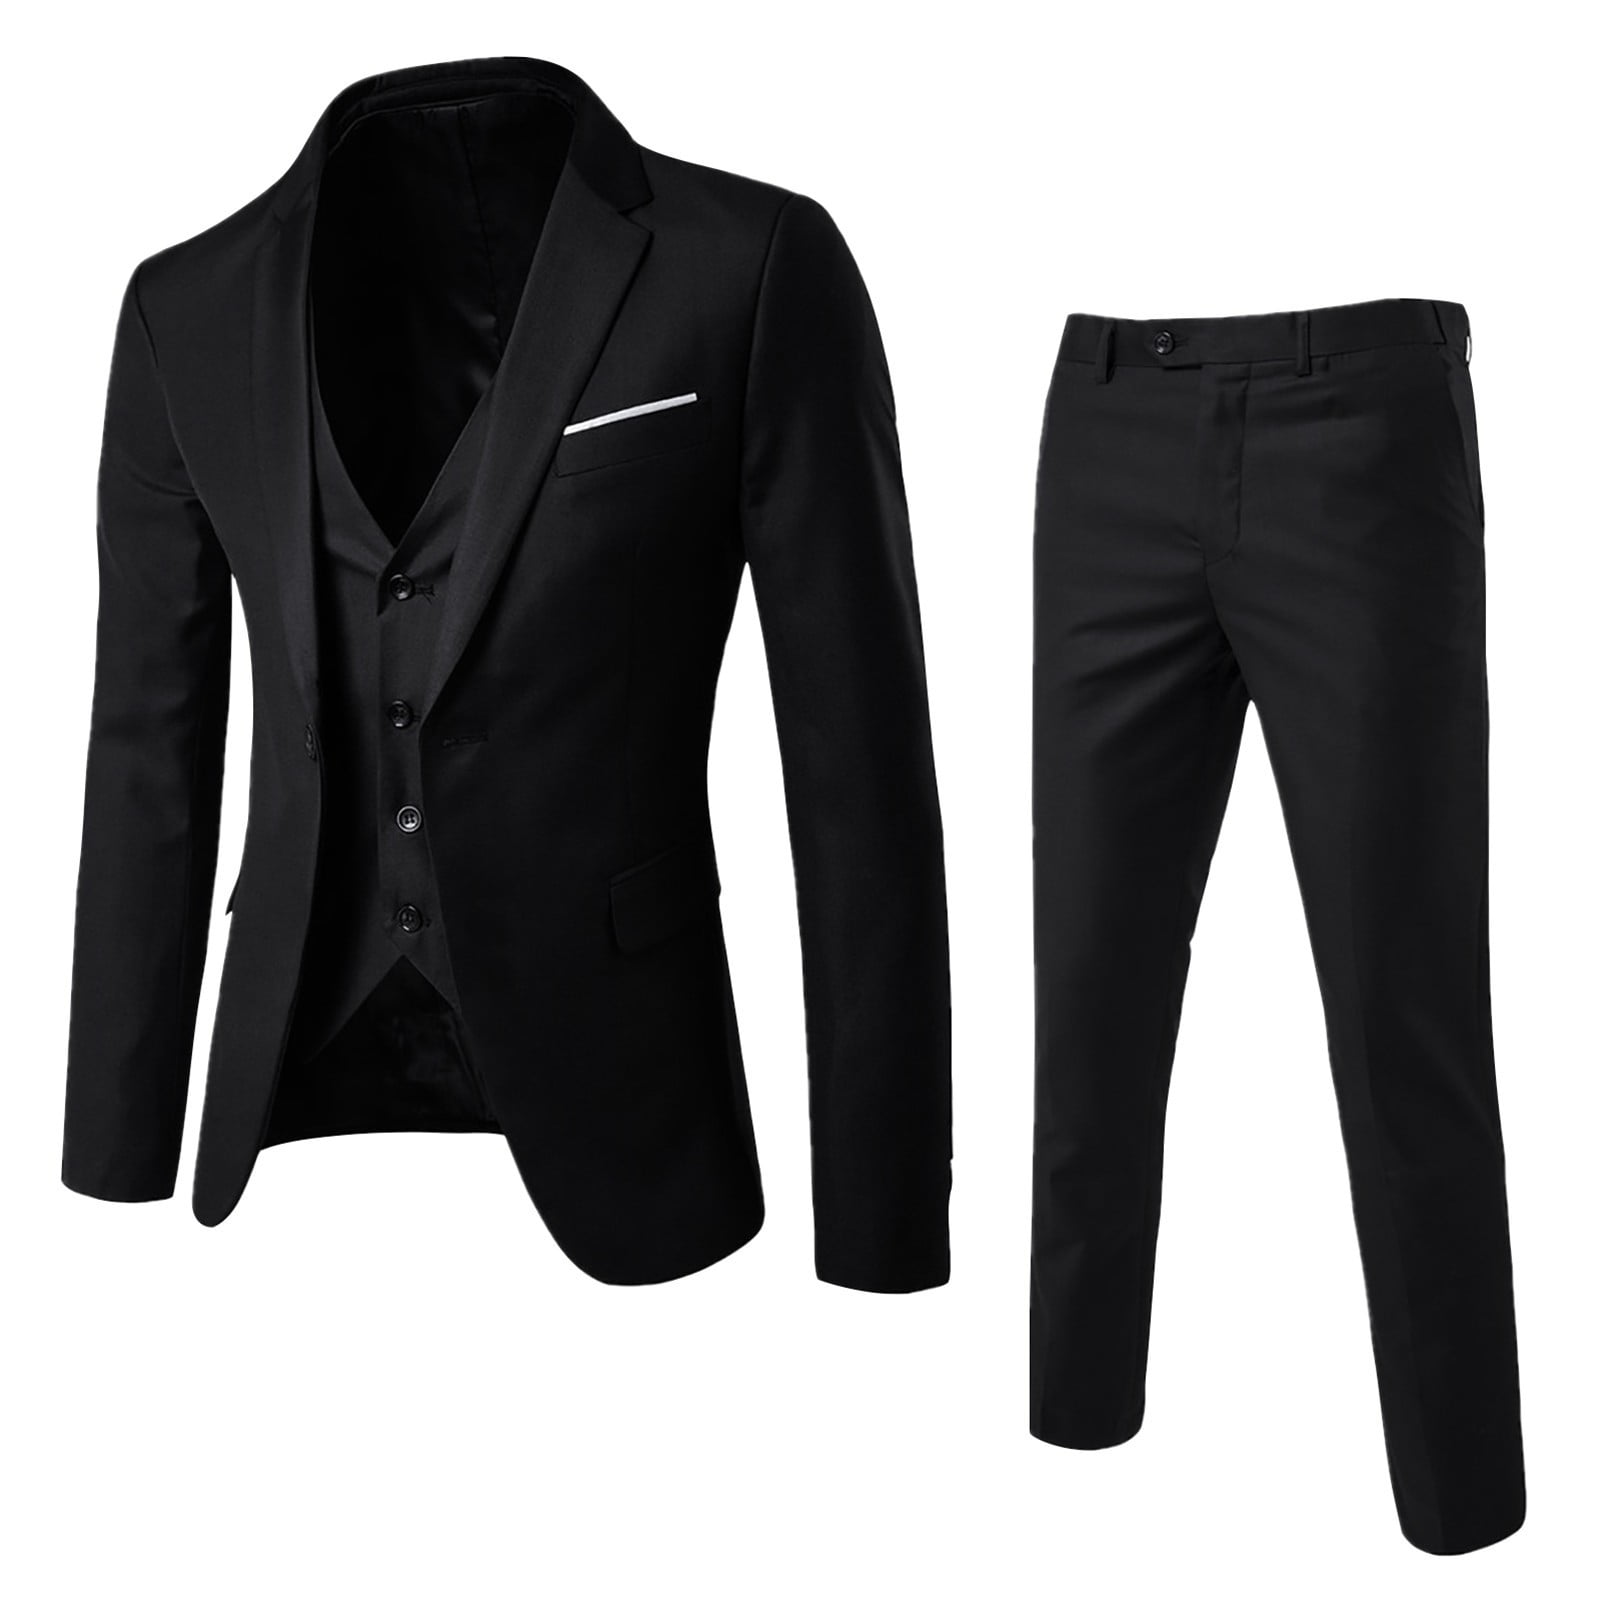 Black Suits Men芒聙聶S Suit Slim 2 Piece Suit Business Wedding Party ...